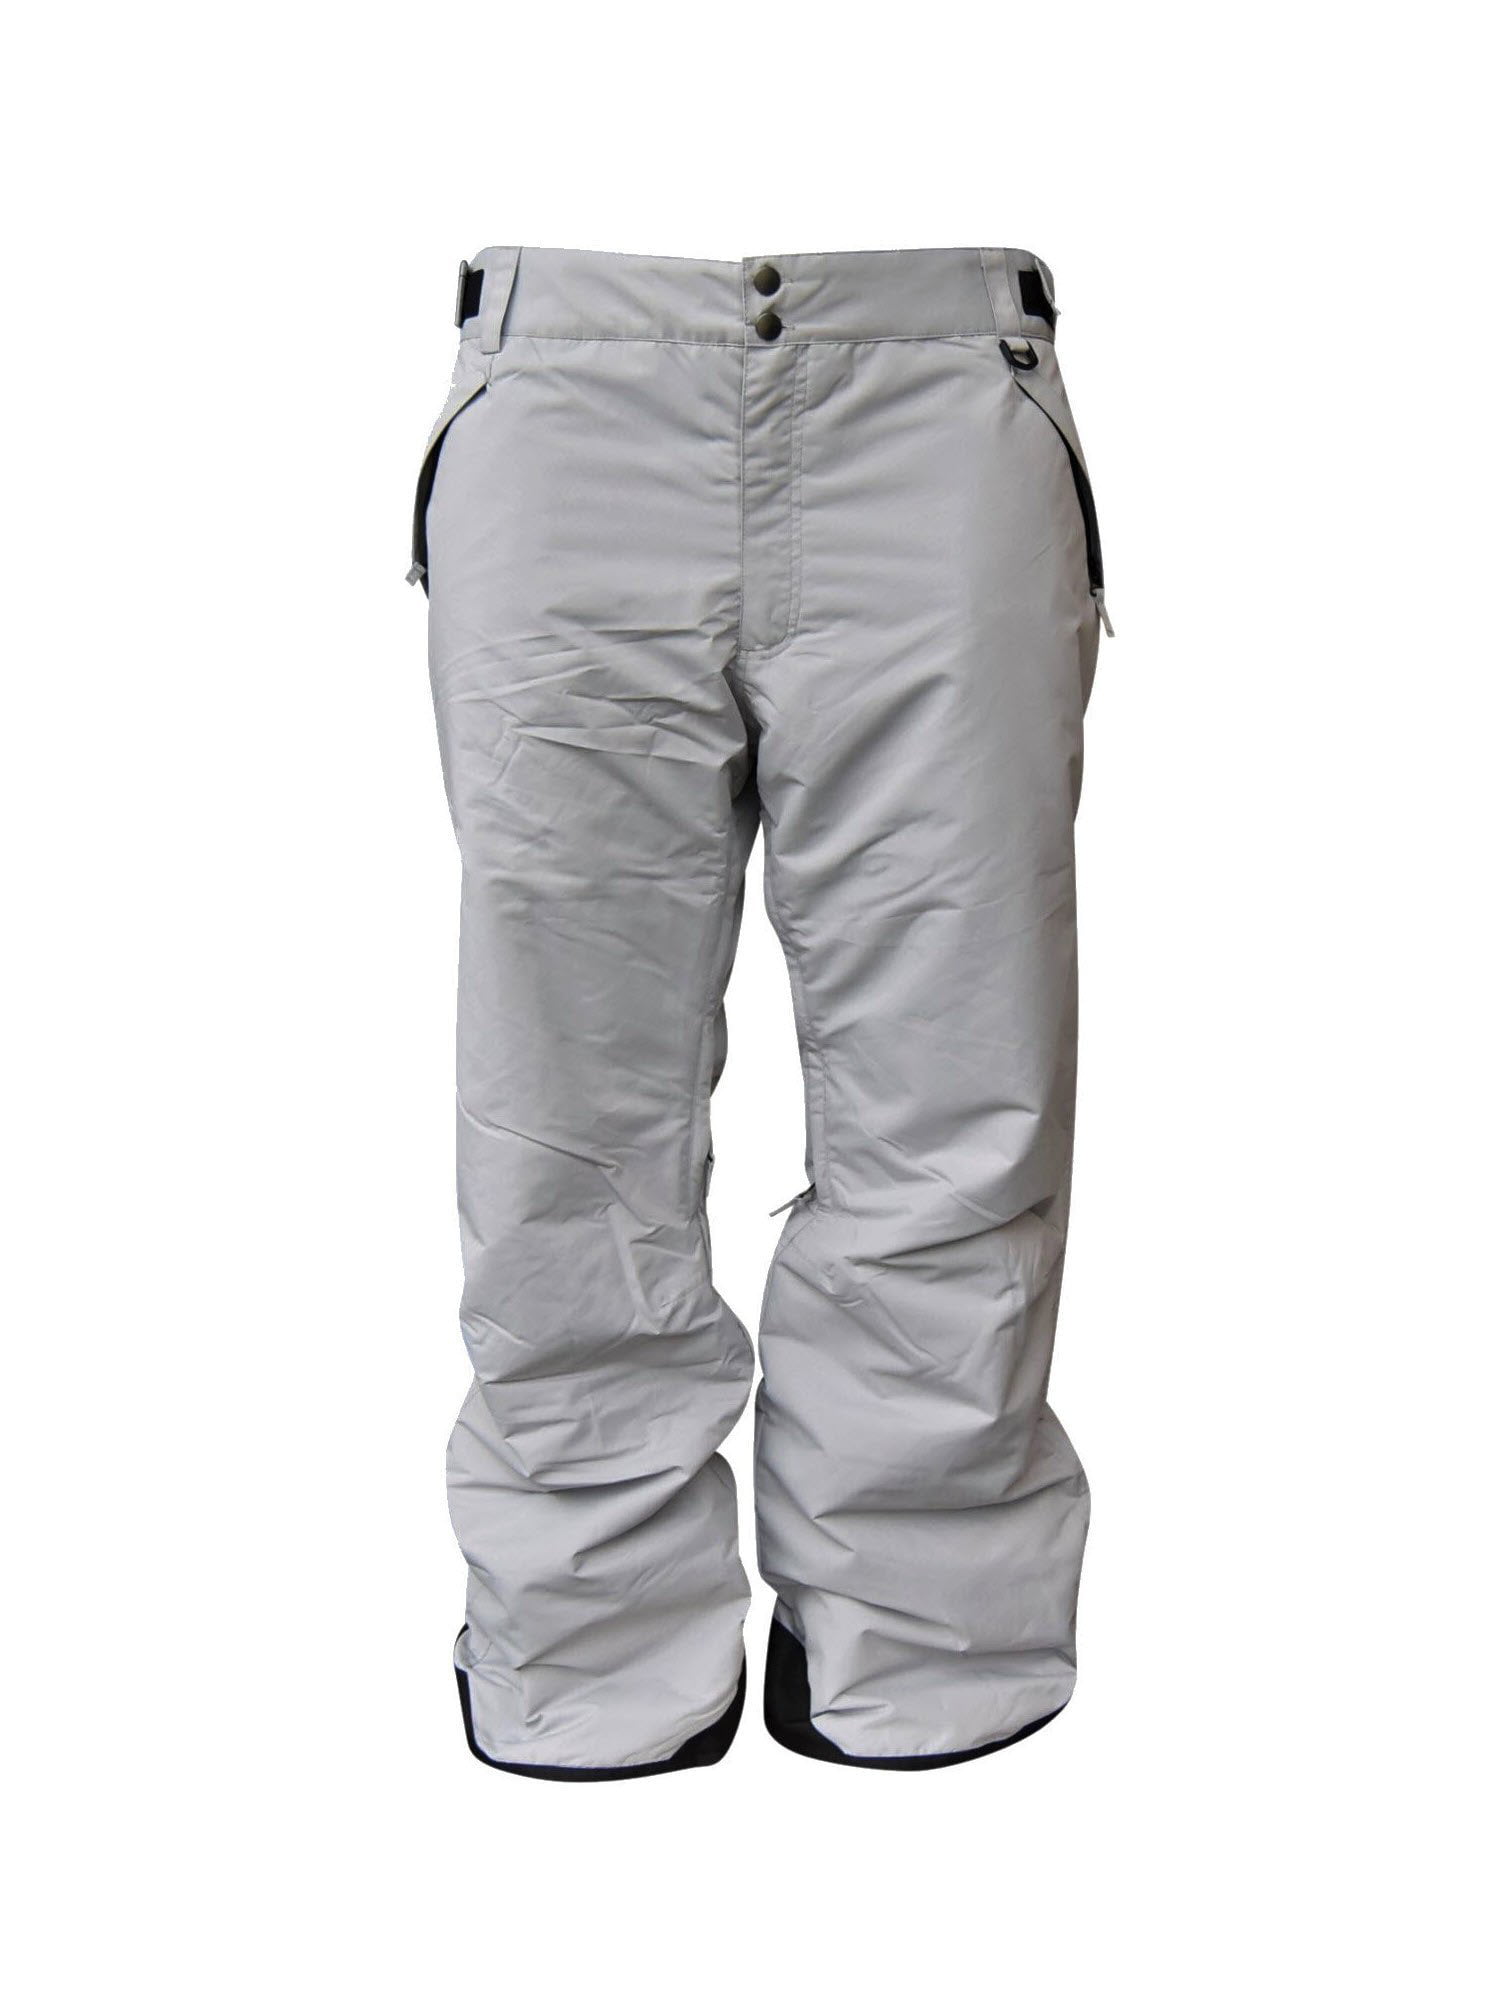 RARE $295 Volkl Perfect Fitting Mens Black Ski Snow Pants 61 X 30 Big & Tall 7XL 